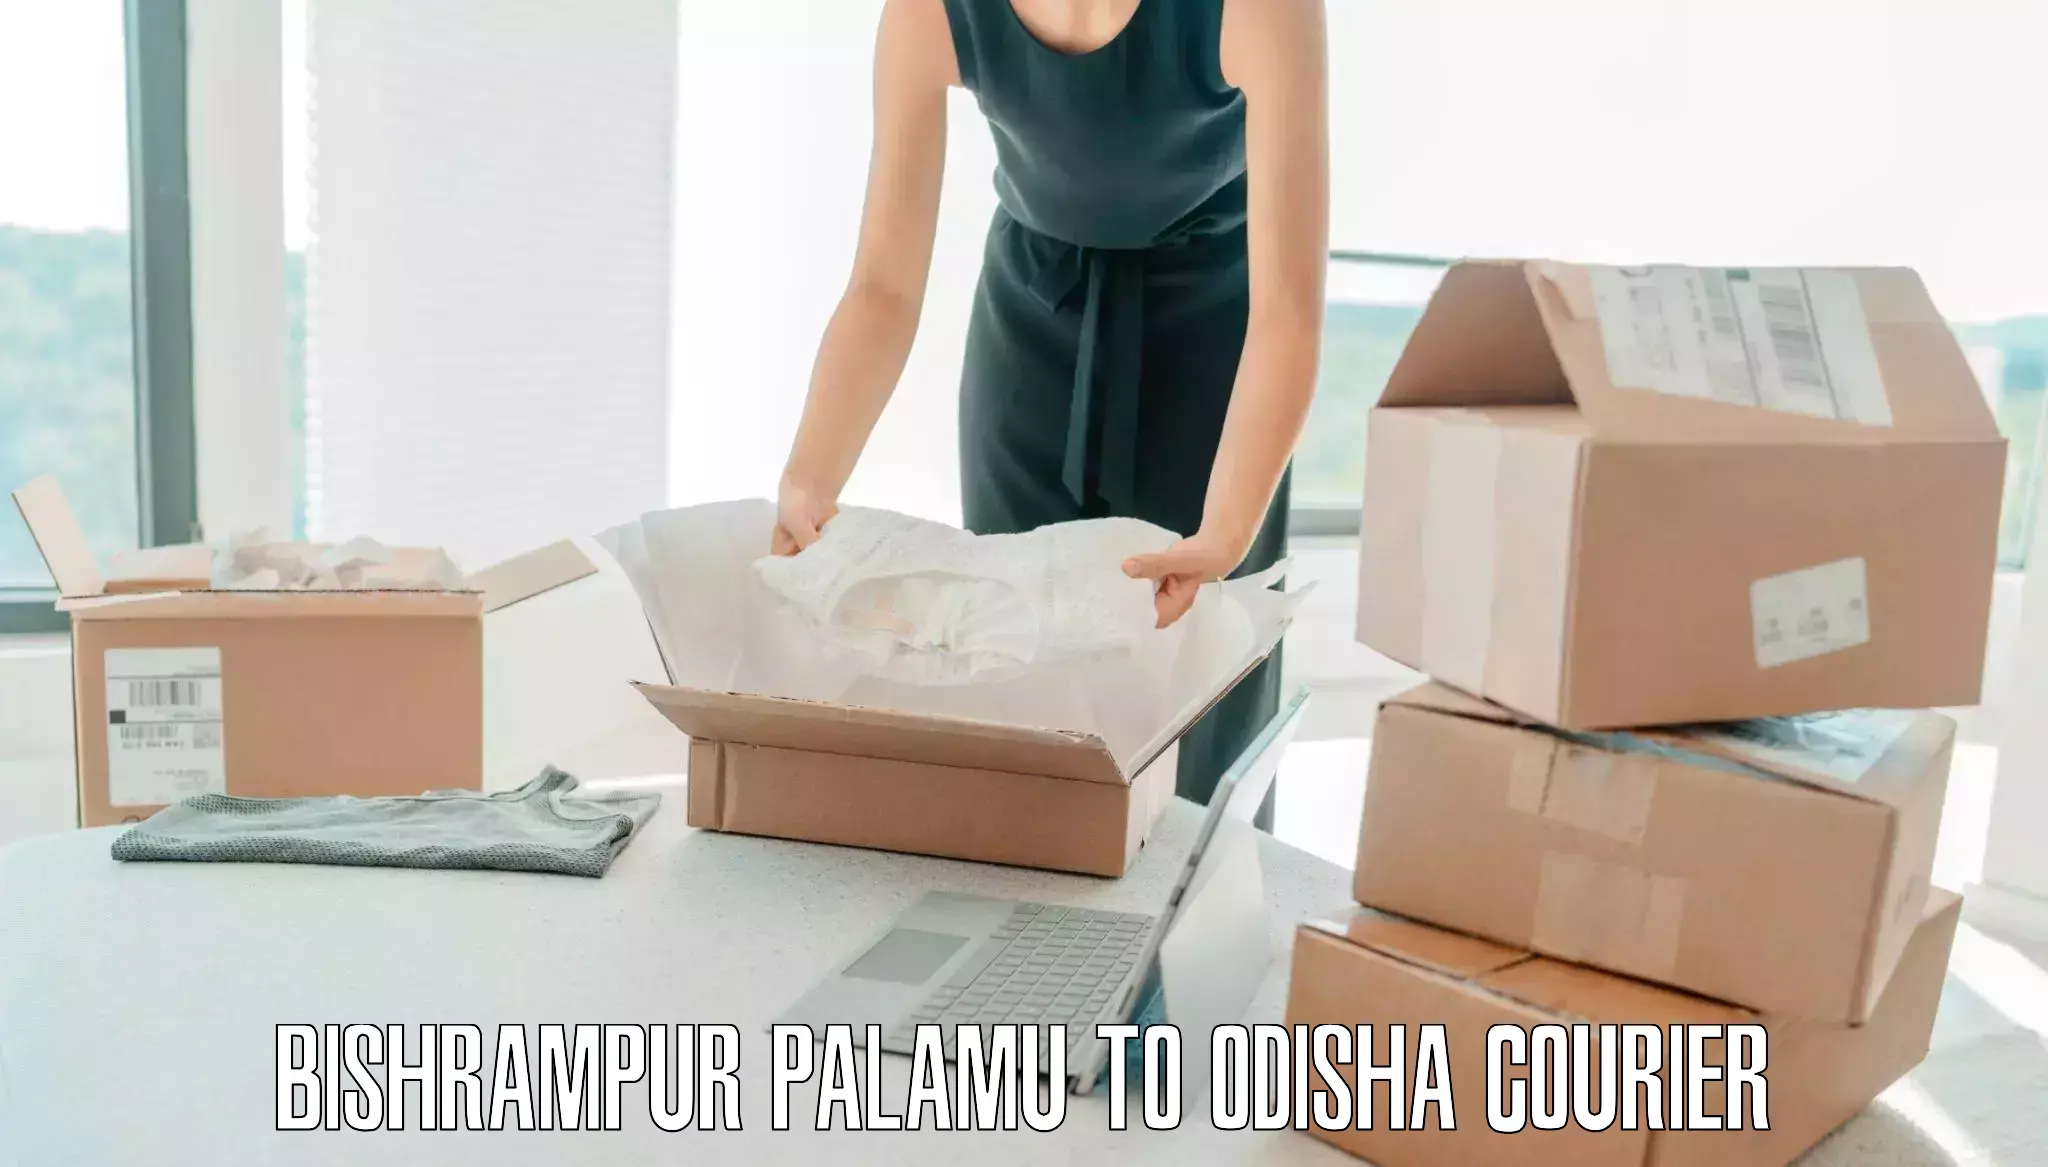 Urgent luggage shipment in Bishrampur Palamu to Riamal